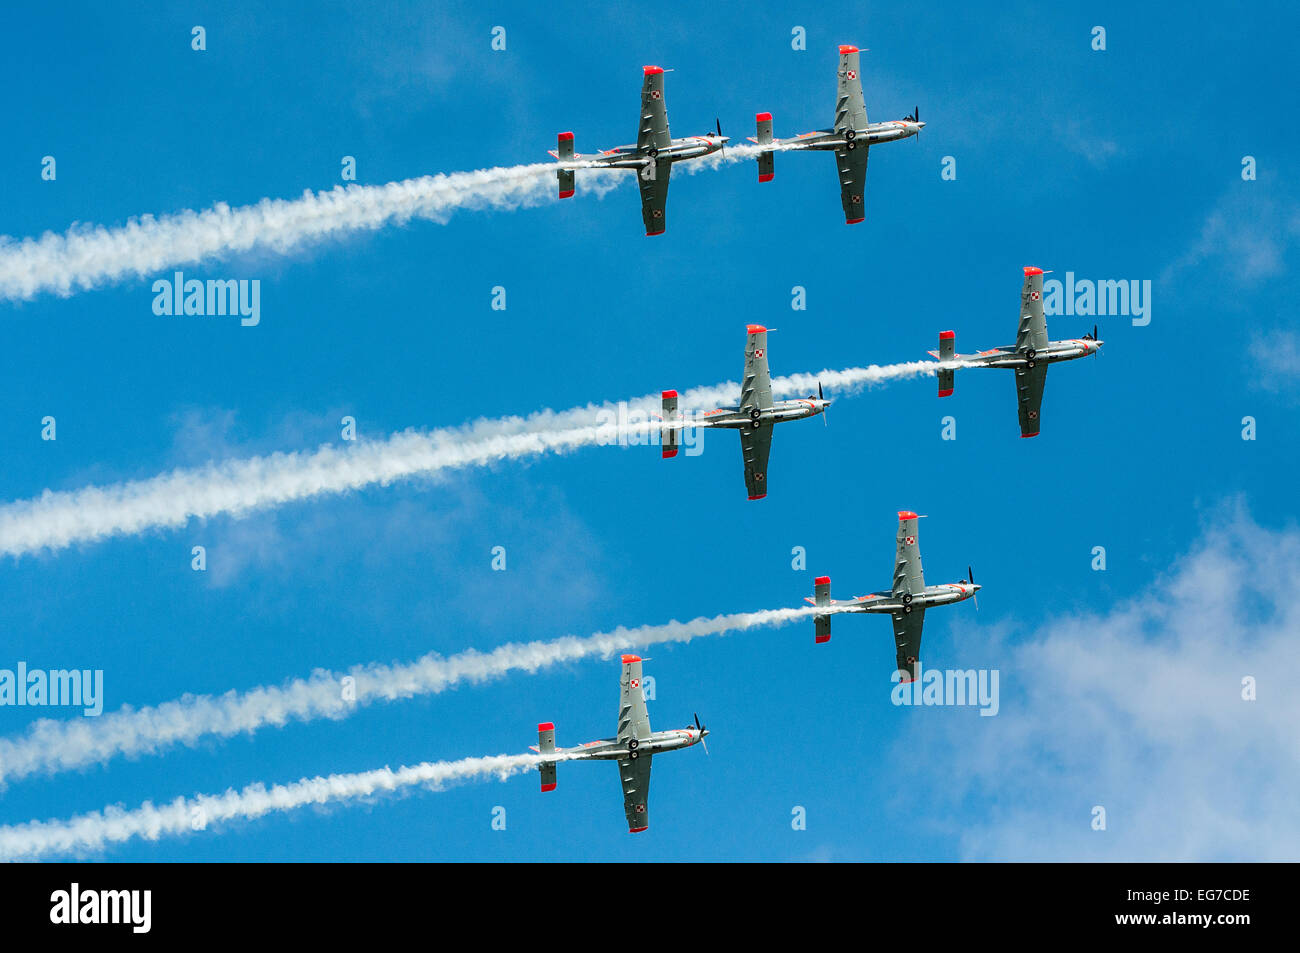 Super équipe Orliky PZL Orlik, armée de l'Air polonaise en vol de groupe avec traces de fumée Banque D'Images